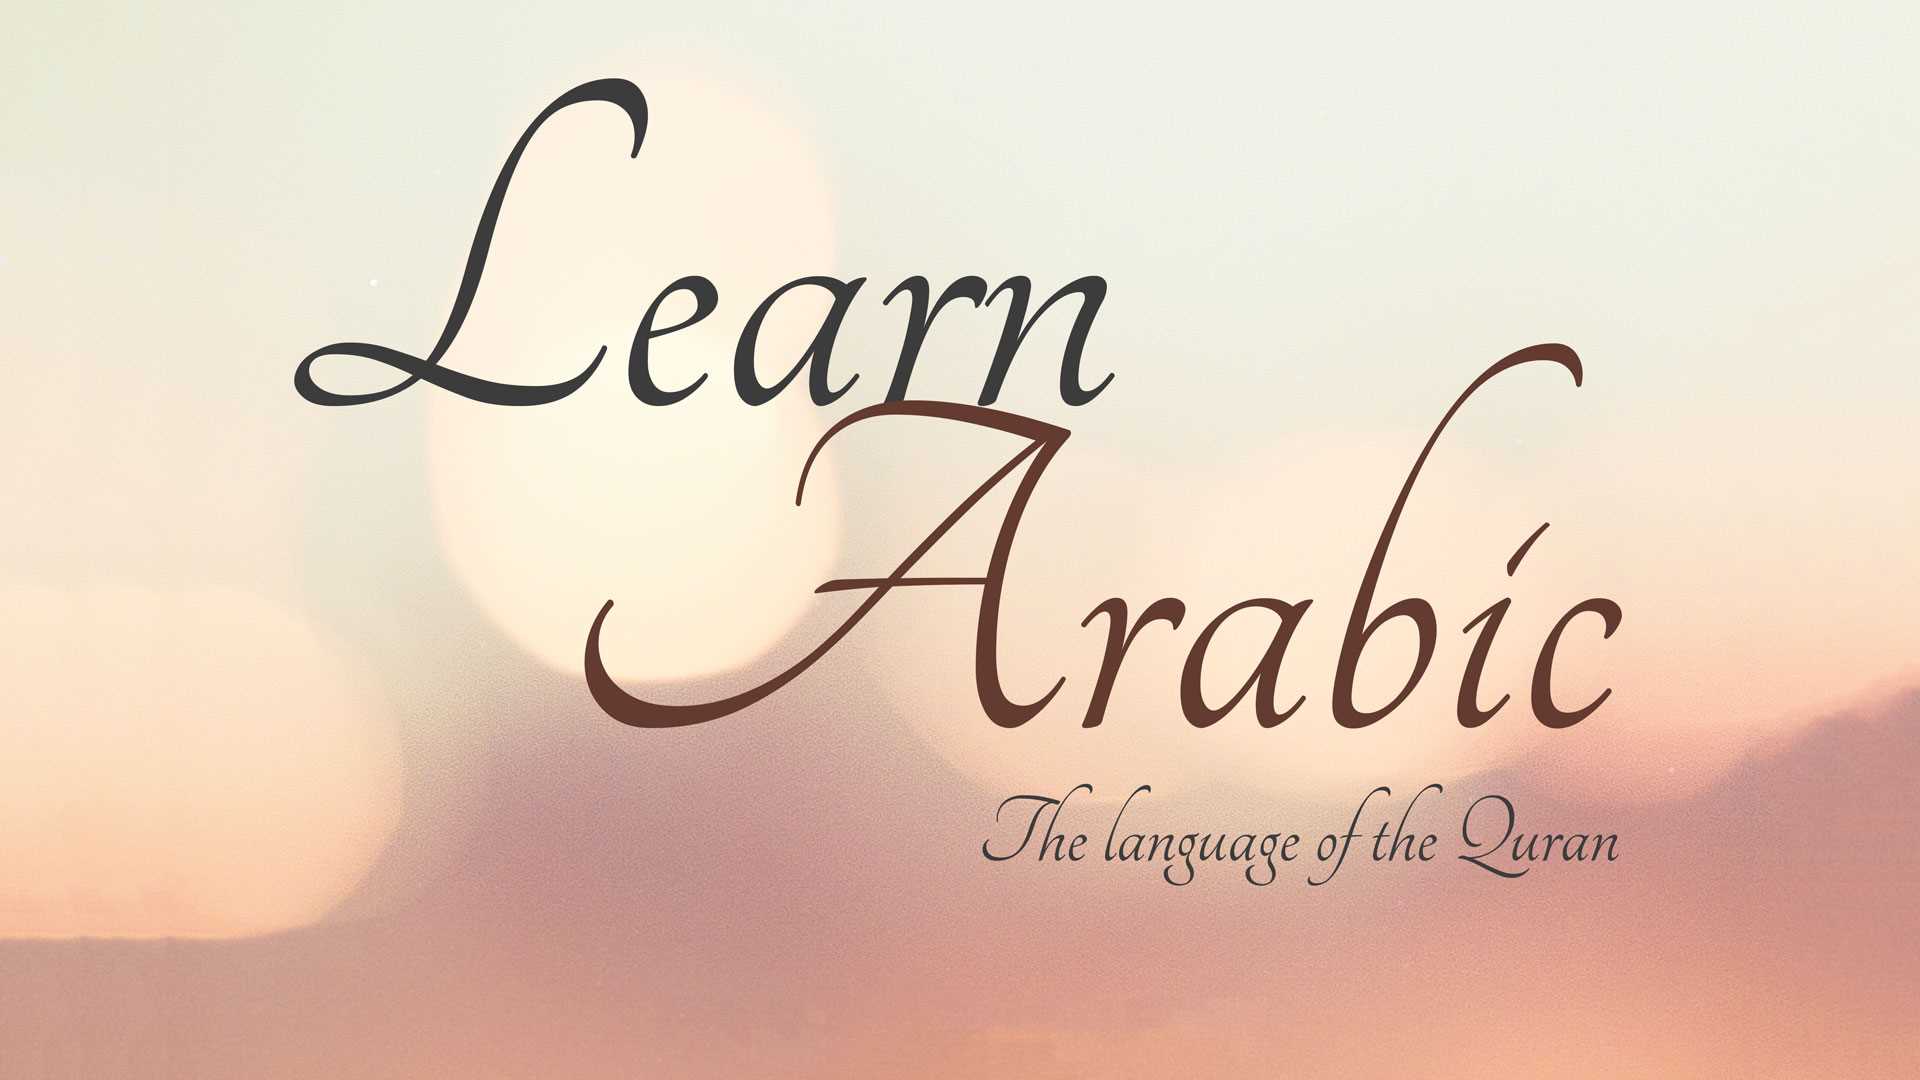 Araberen lezvi das@ntacner daser / արաբերեն լեզվի դասընթացներ դասեր matcheli gner